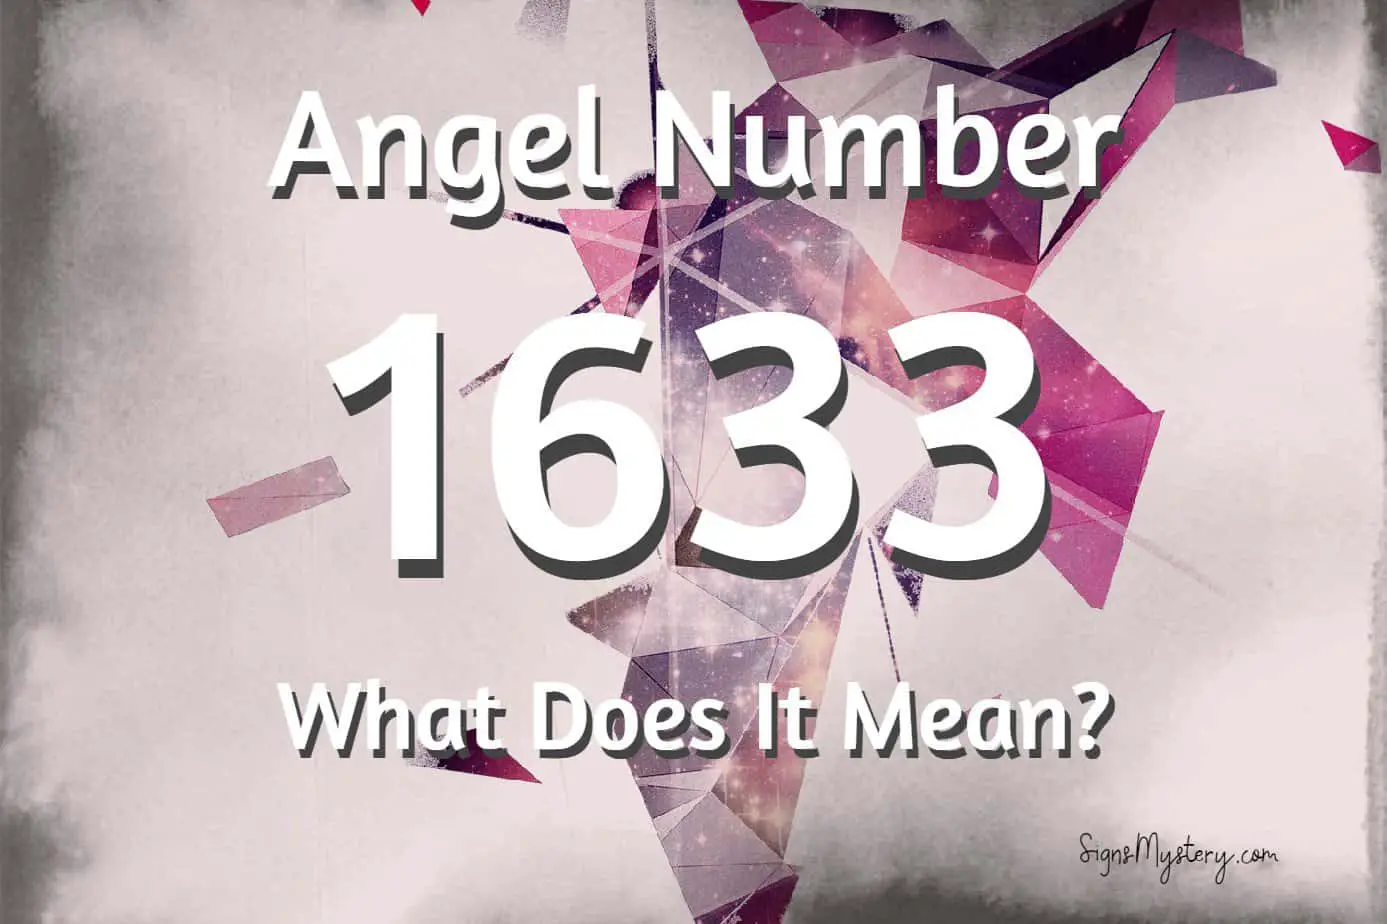 1633 angel number